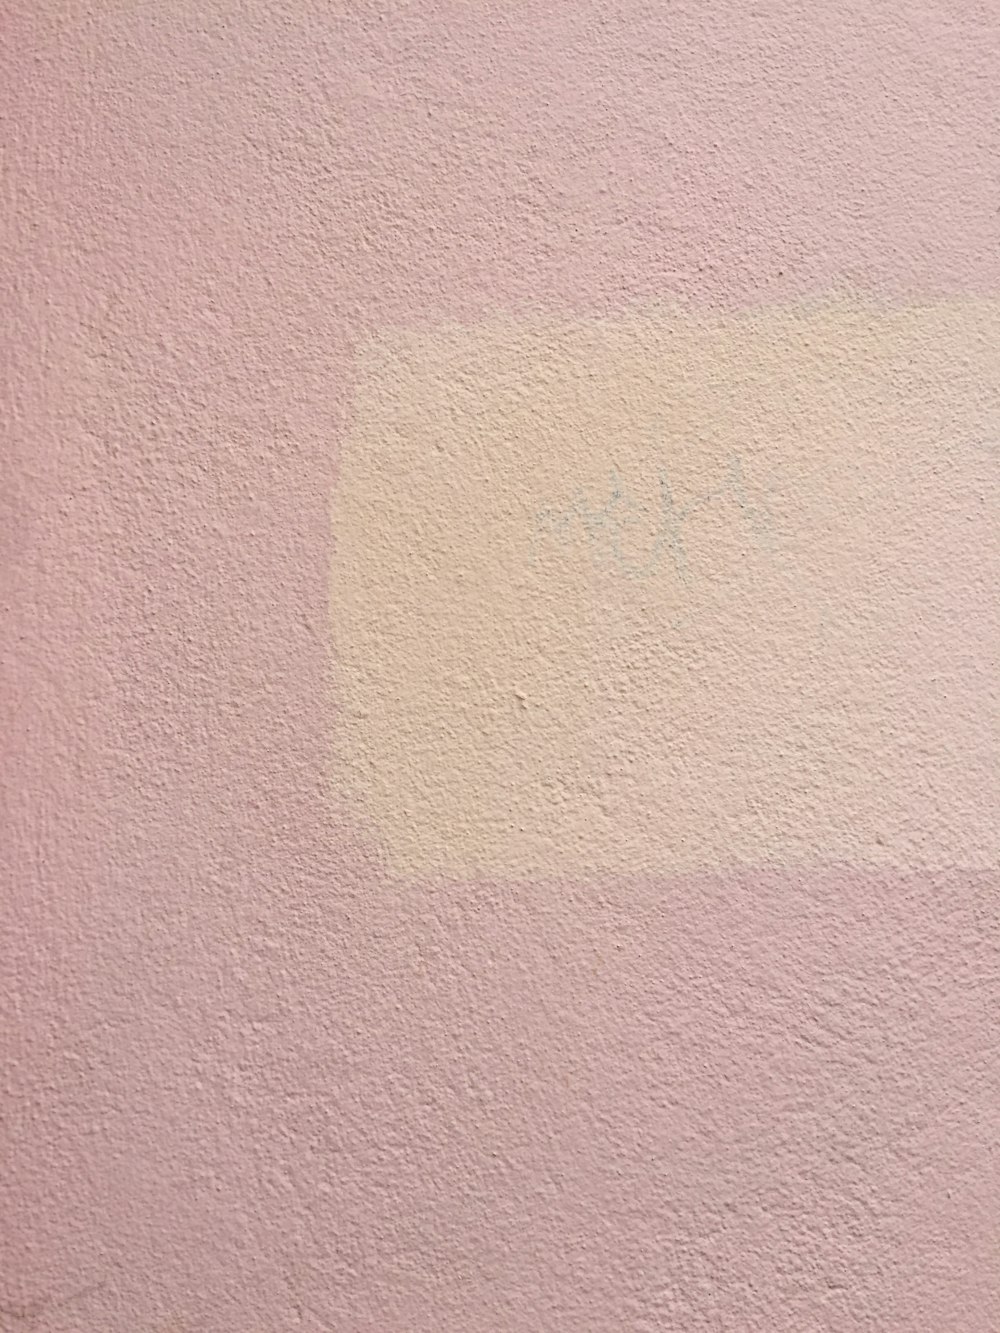 superfície de concreto rosa